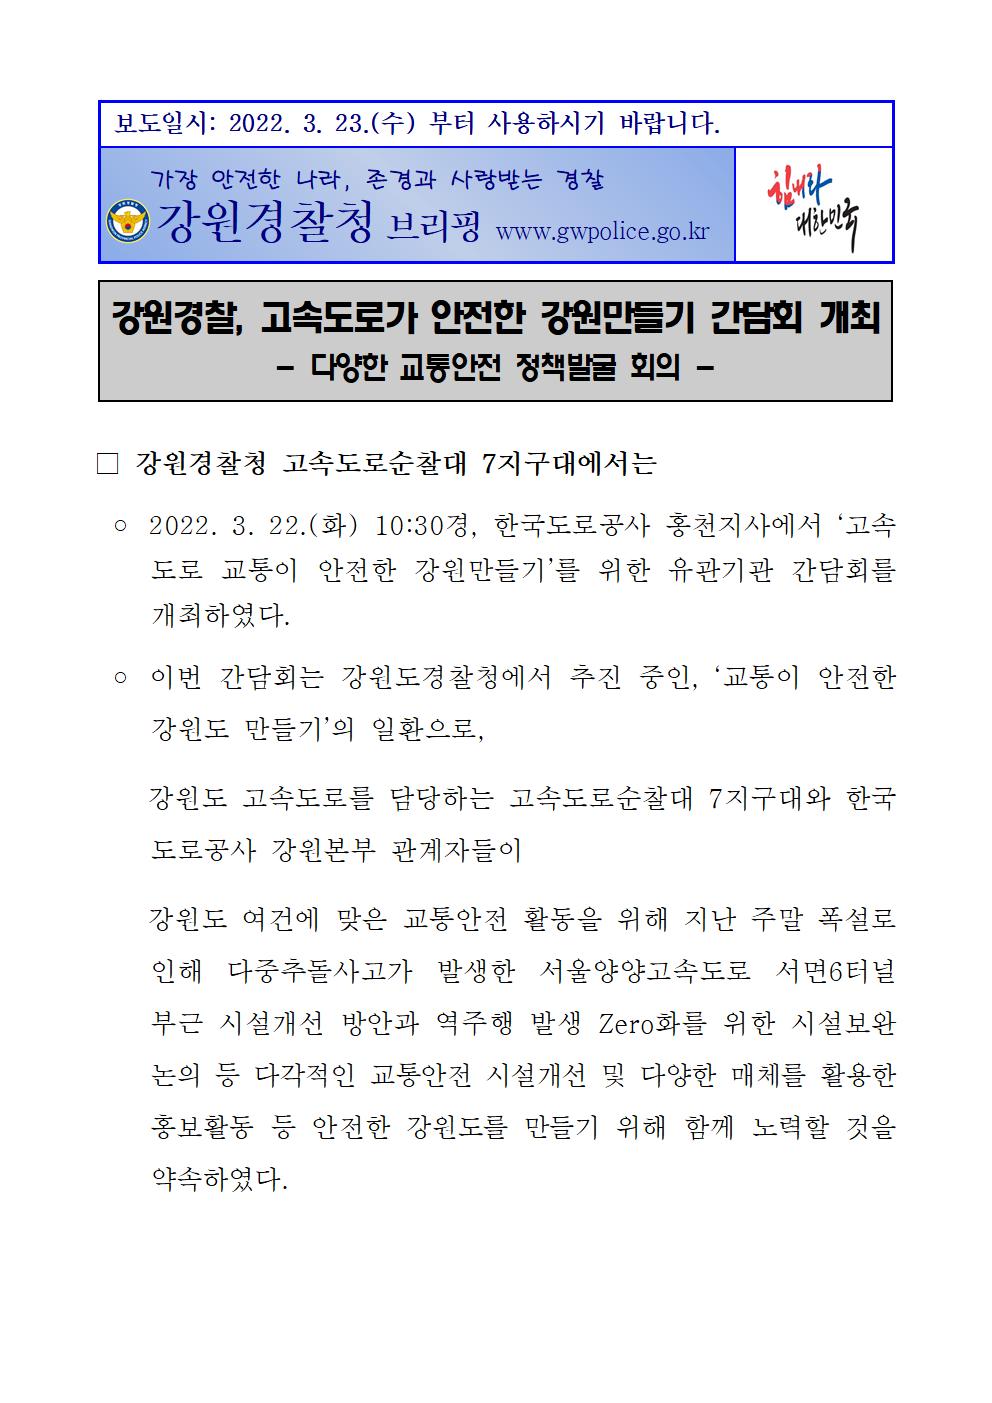 고속도로가 안전한 강원만들기 간담회 개최-220322 언론보도자료 (안전한 강원만들기 간담회)001